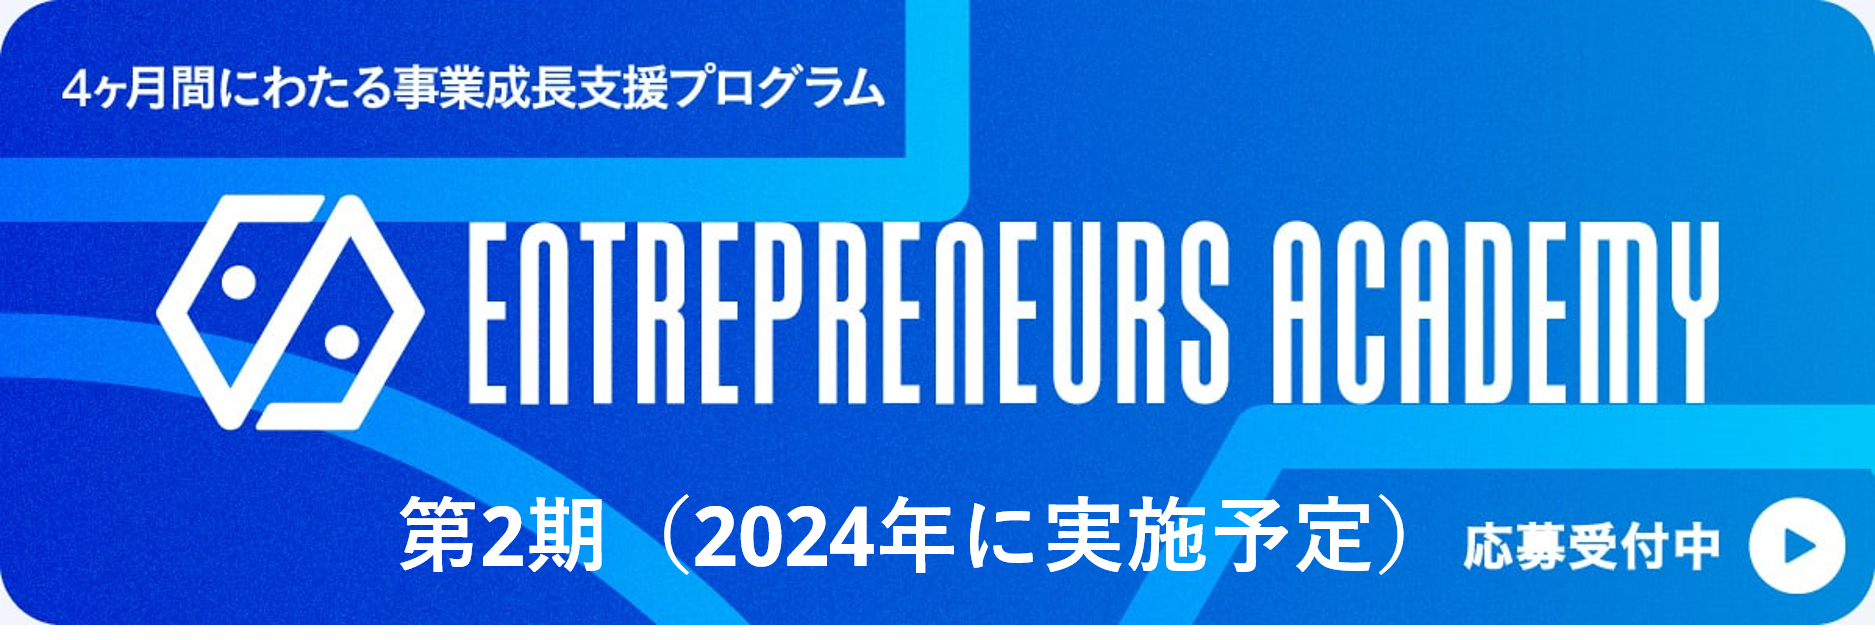 起業家のための事業成長支援プログラム Entrepreneurs Academy